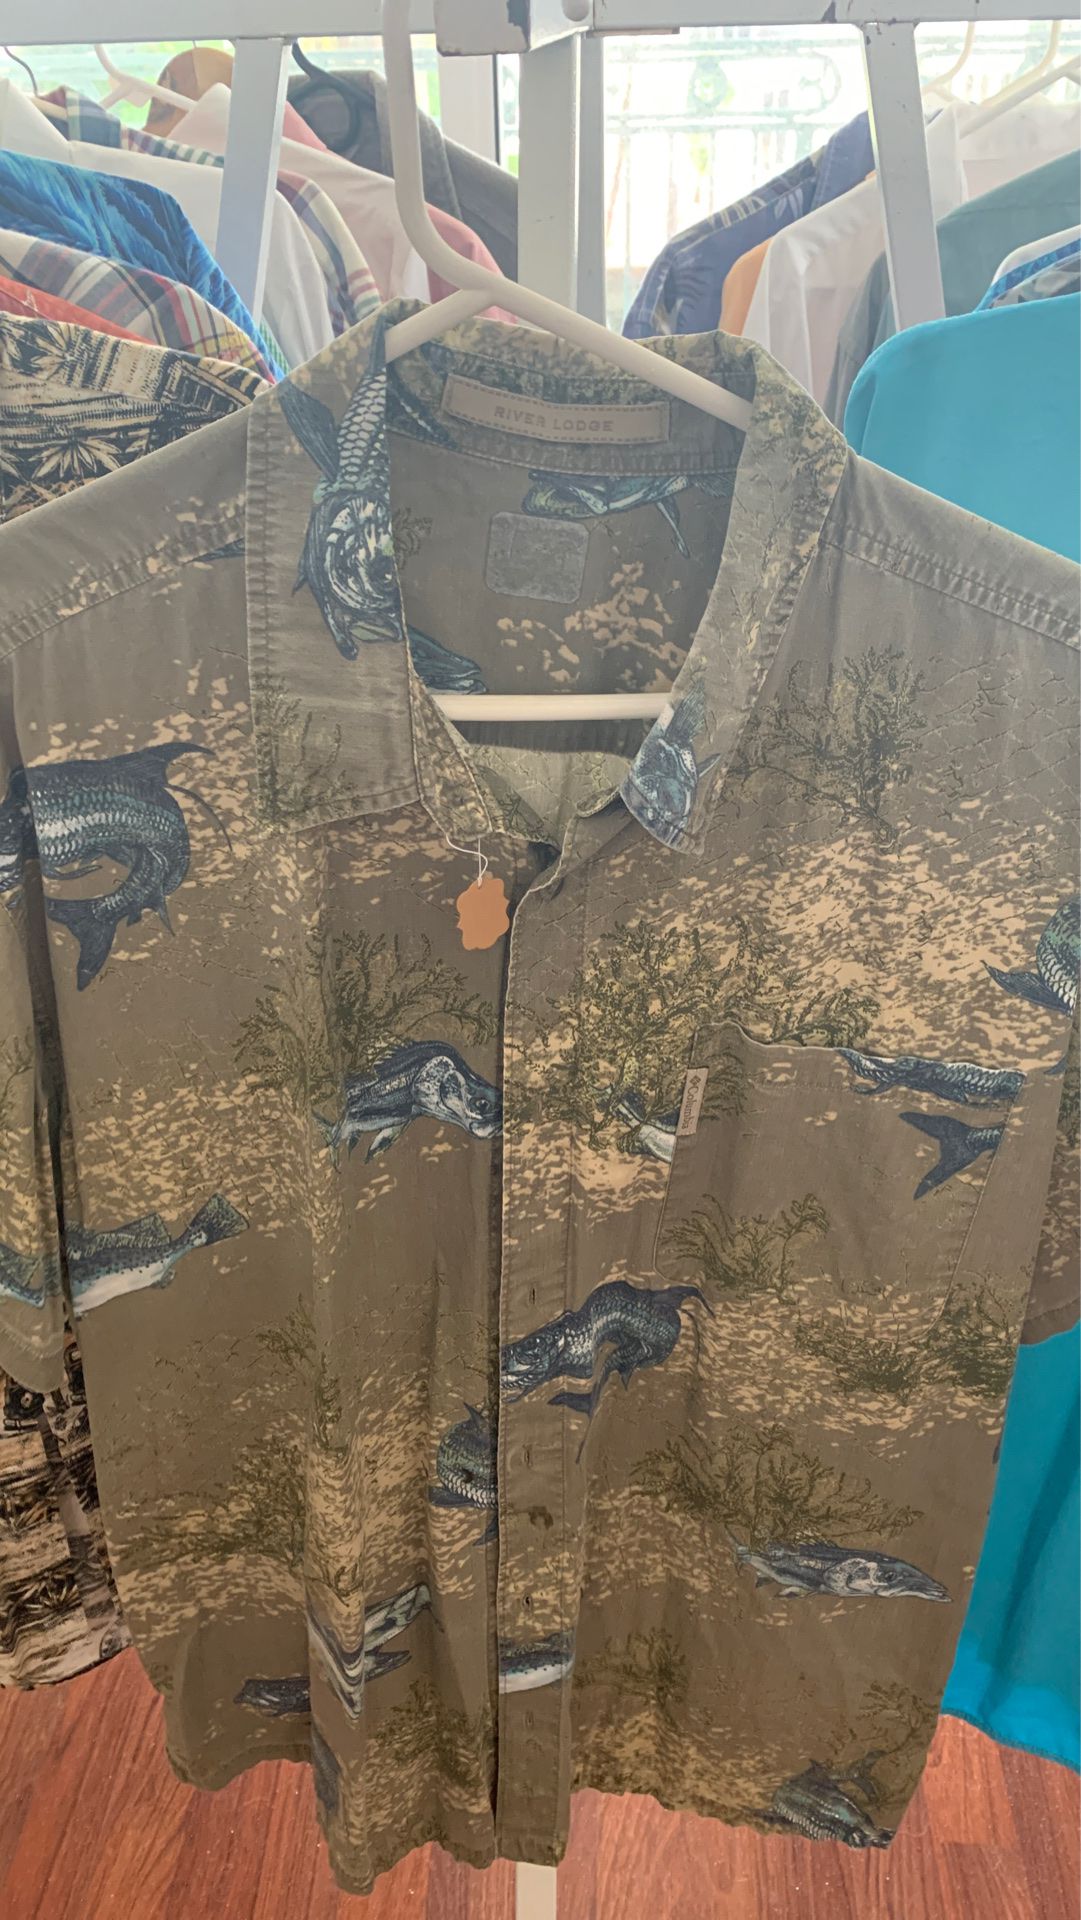 XXl Fishing shirt by Columbia brand